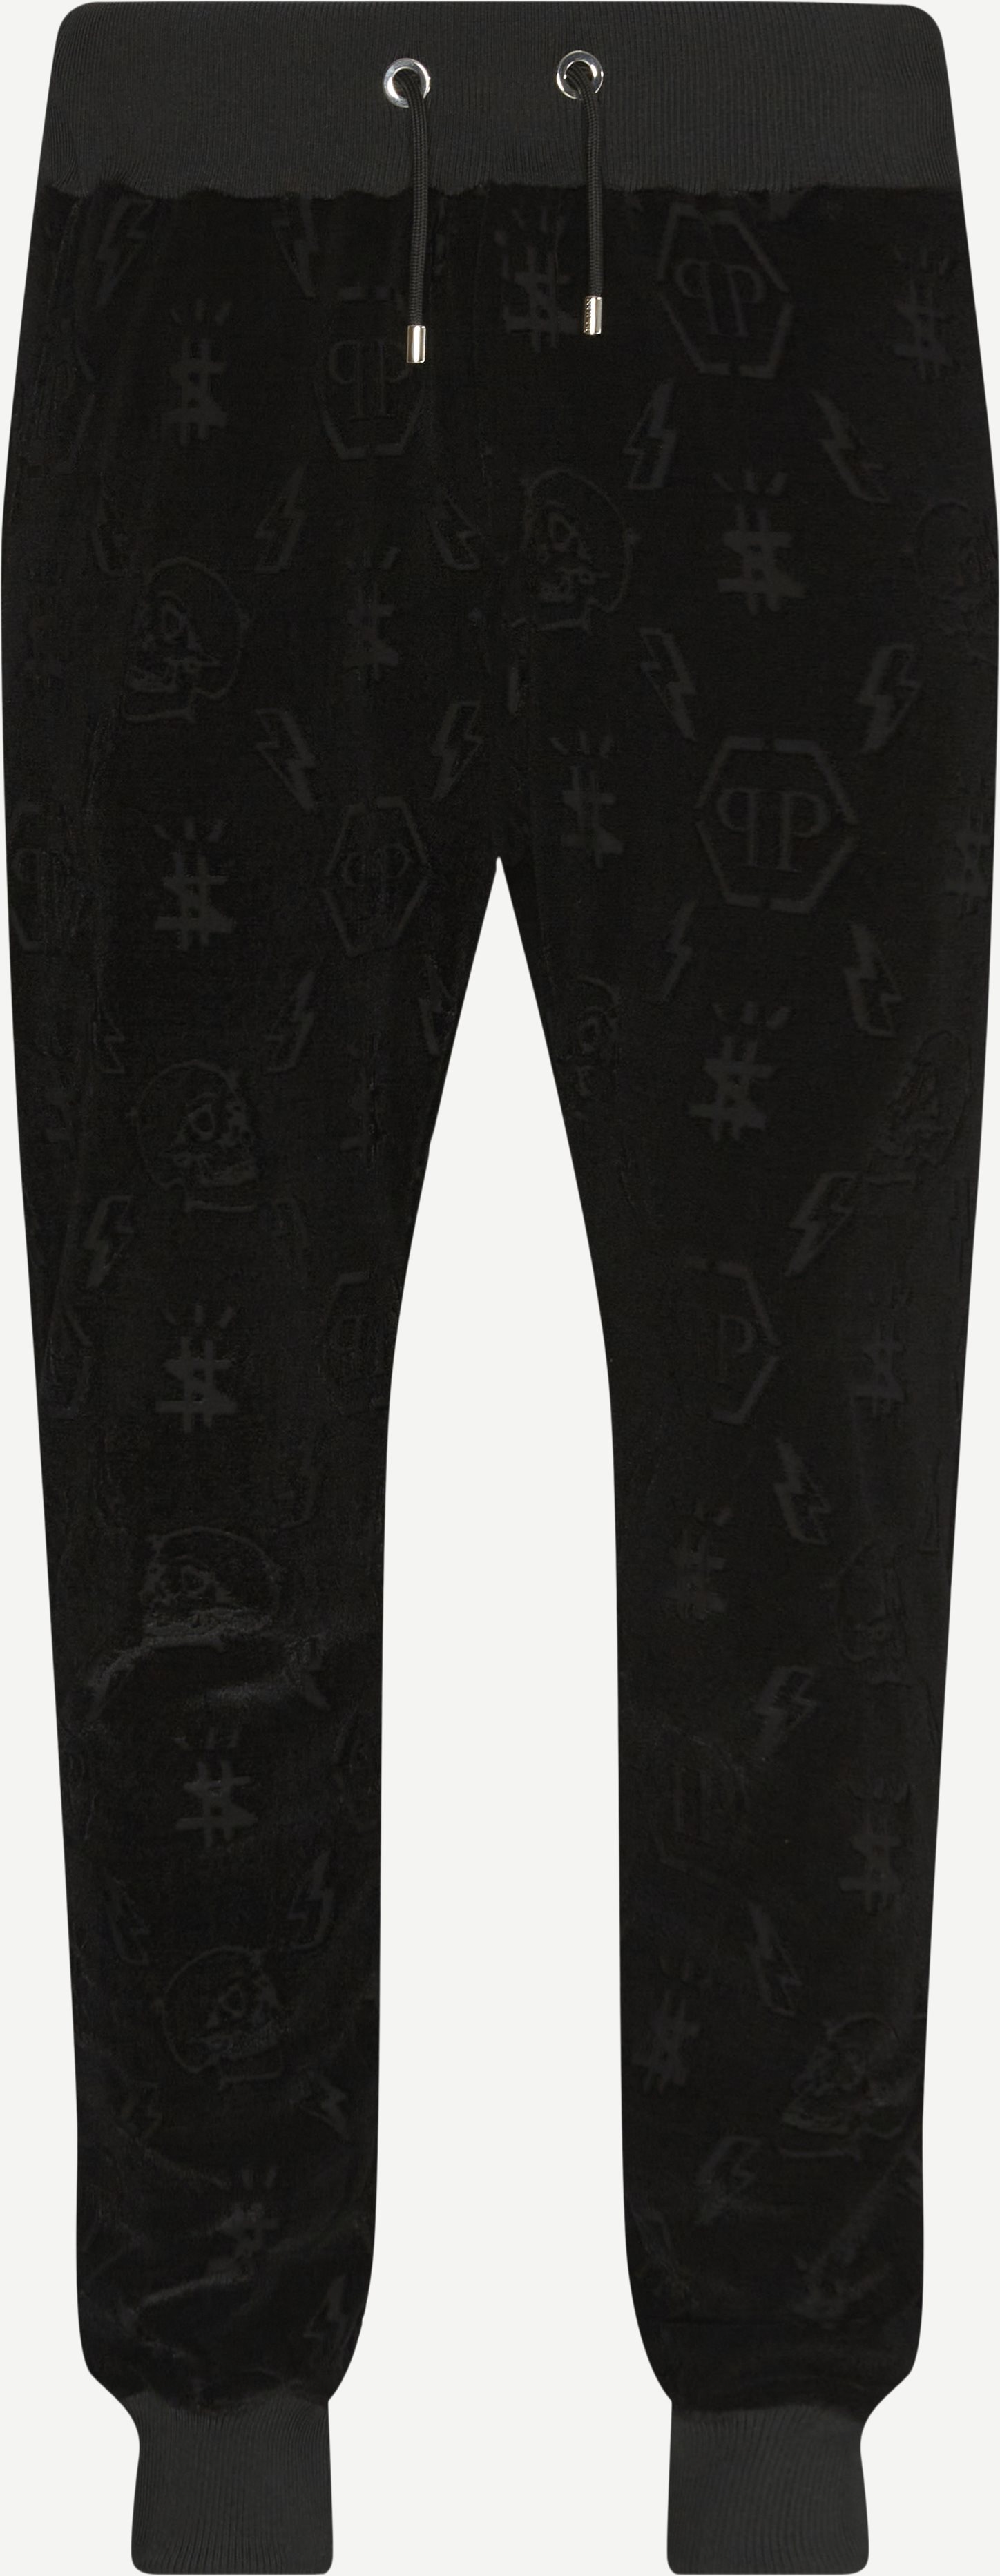 Jogging Trousers Monogram - Trousers - Regular fit - Black